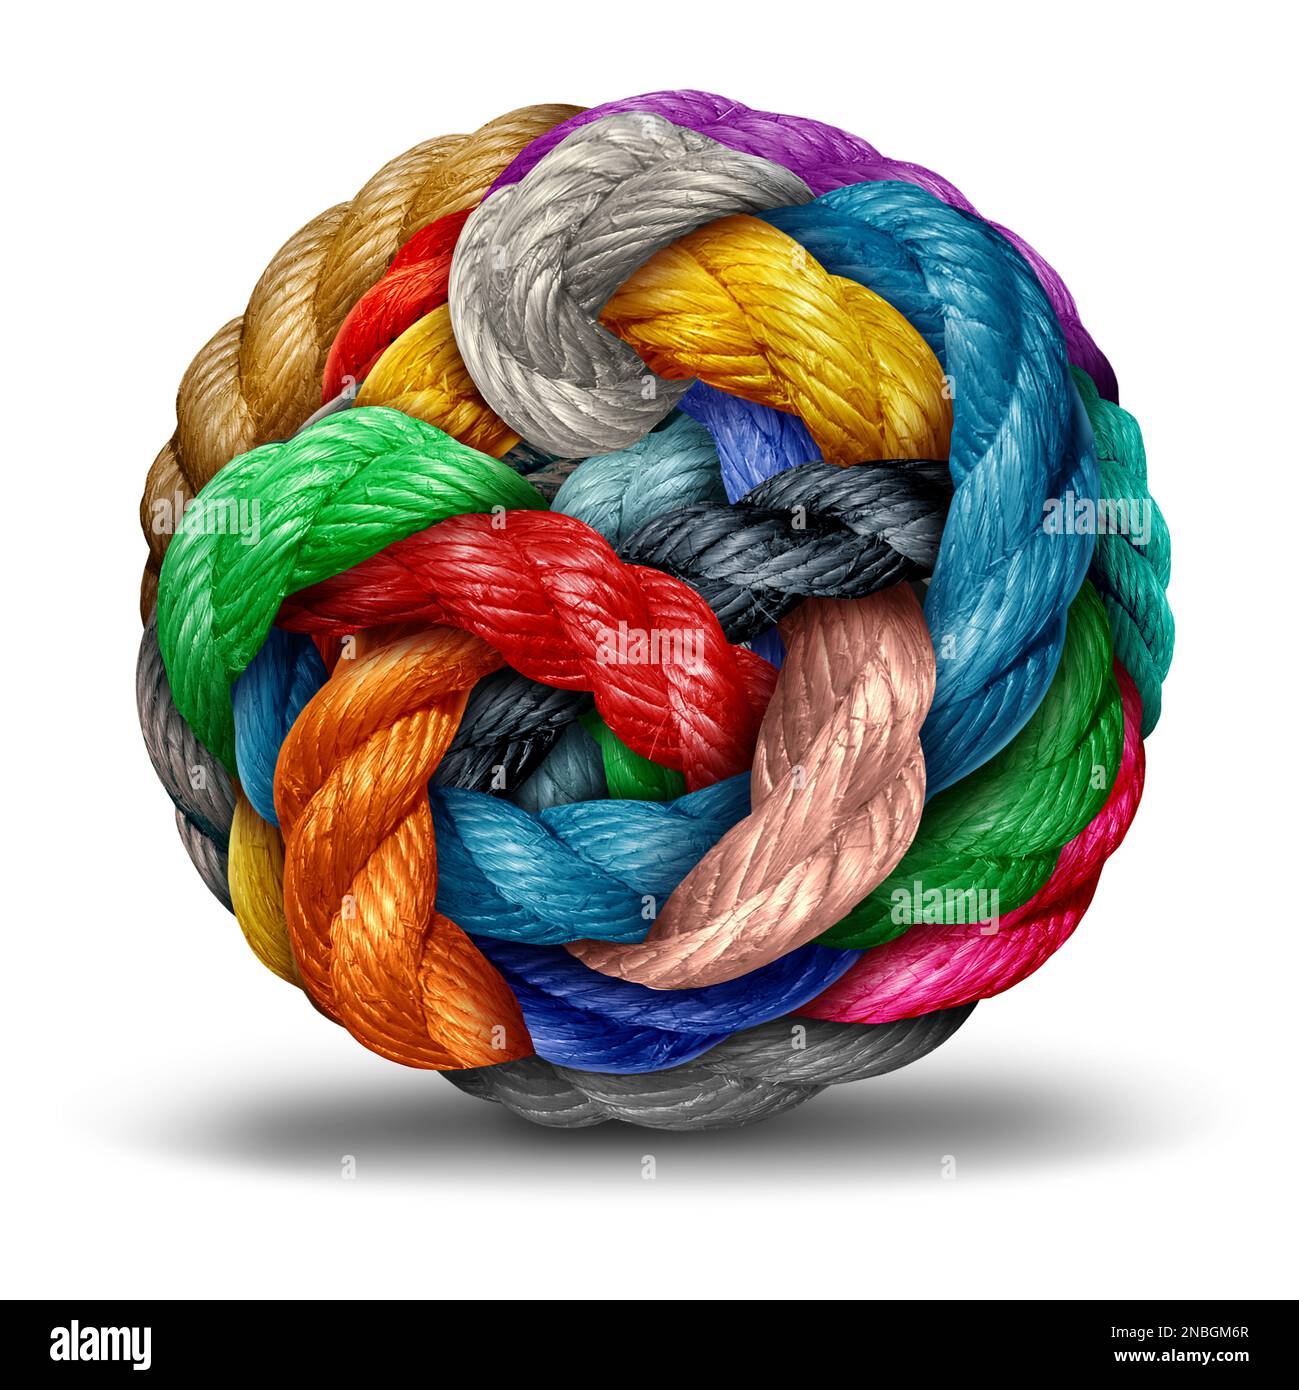 Concept de complexité comme un groupe de divers objets de corde façonnés comme une sphère représentant l'unité ou la confusion et l'enchevêtrement avec un cluster. Banque D'Images